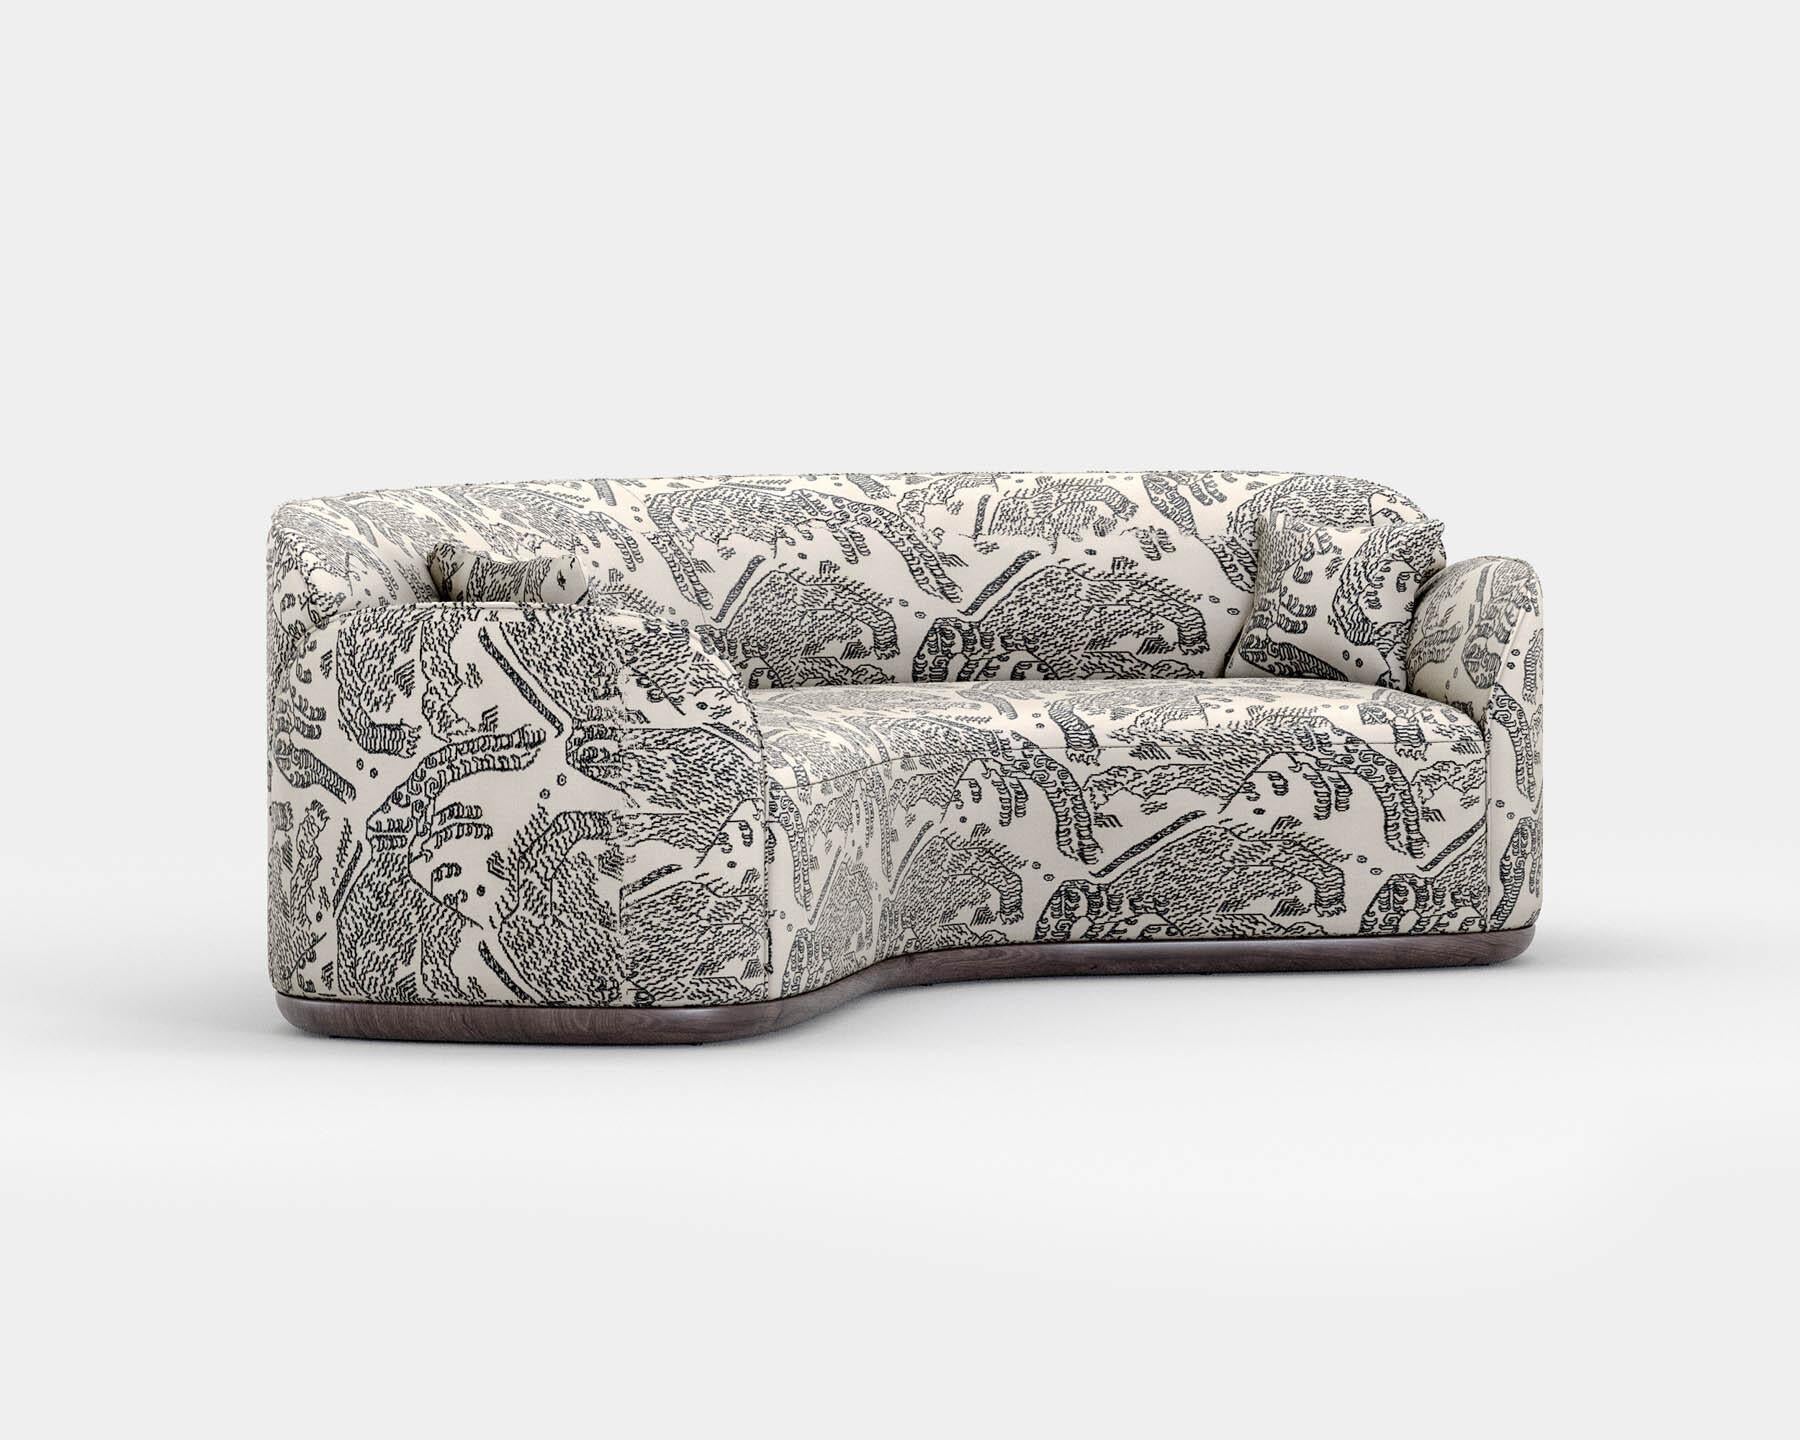 Unio geschwungenes sofa von Poiat 
Entwerfer: Timo Mikkonen & Antti Rouhunkoski 

Collection UNIO 2023

Abmessungen: H. 72 x B. 220 T. 110 cm  SH. 40 (3-Sitzer)
Abgebildetes Modell: Tiger Mountain Graphit - Dedar
 
Mit der Unio Collection, die einen